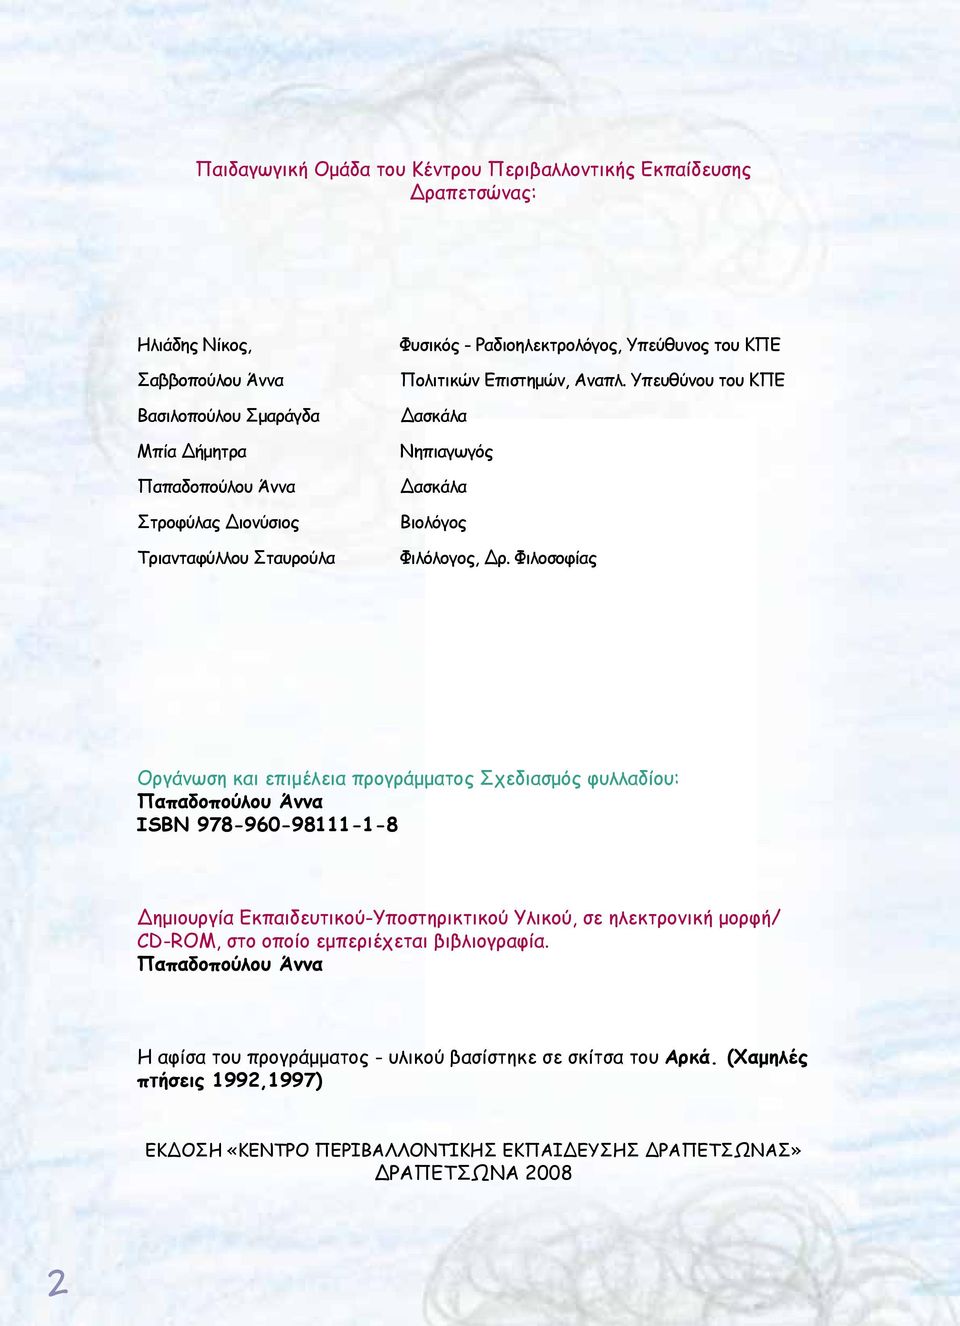 Φιλοσοφίας Οργάνωση και επιμέλεια προγράμματος Σχεδιασμός φυλλαδίου: Παπαδοπούλου Άννα ISBN 978-960-98111-1-8 Δημιουργία Εκπαιδευτικού-Υποστηρικτικού Υλικού, σε ηλεκτρονική μορφή/ CD-ROM,